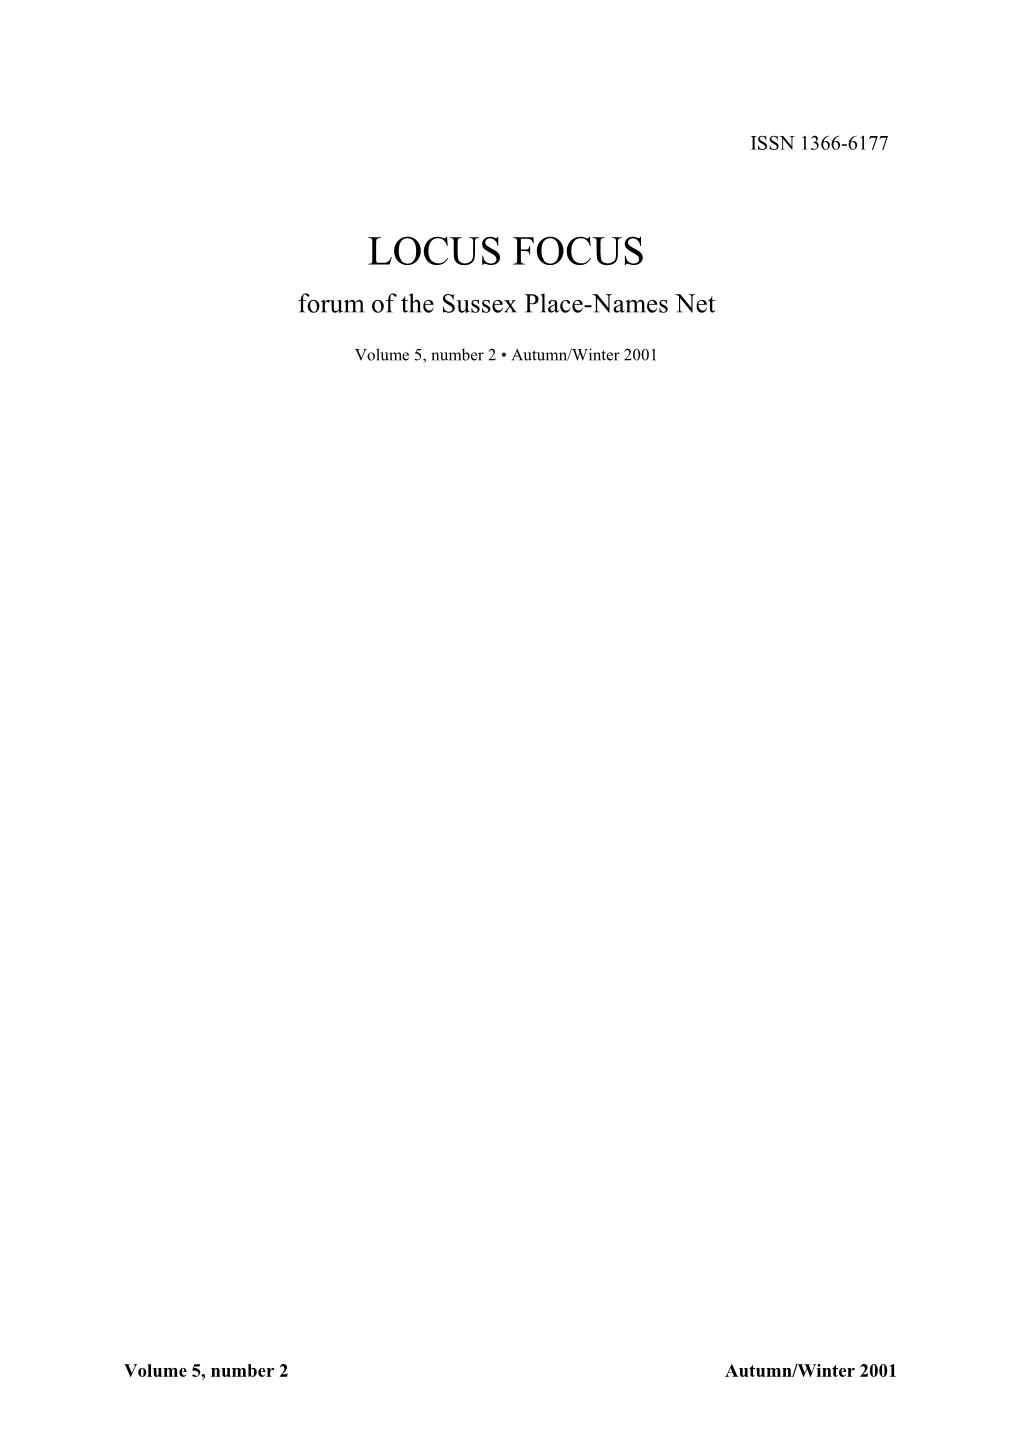 LOCUS FOCUS Forum of the Sussex Place-Names Net